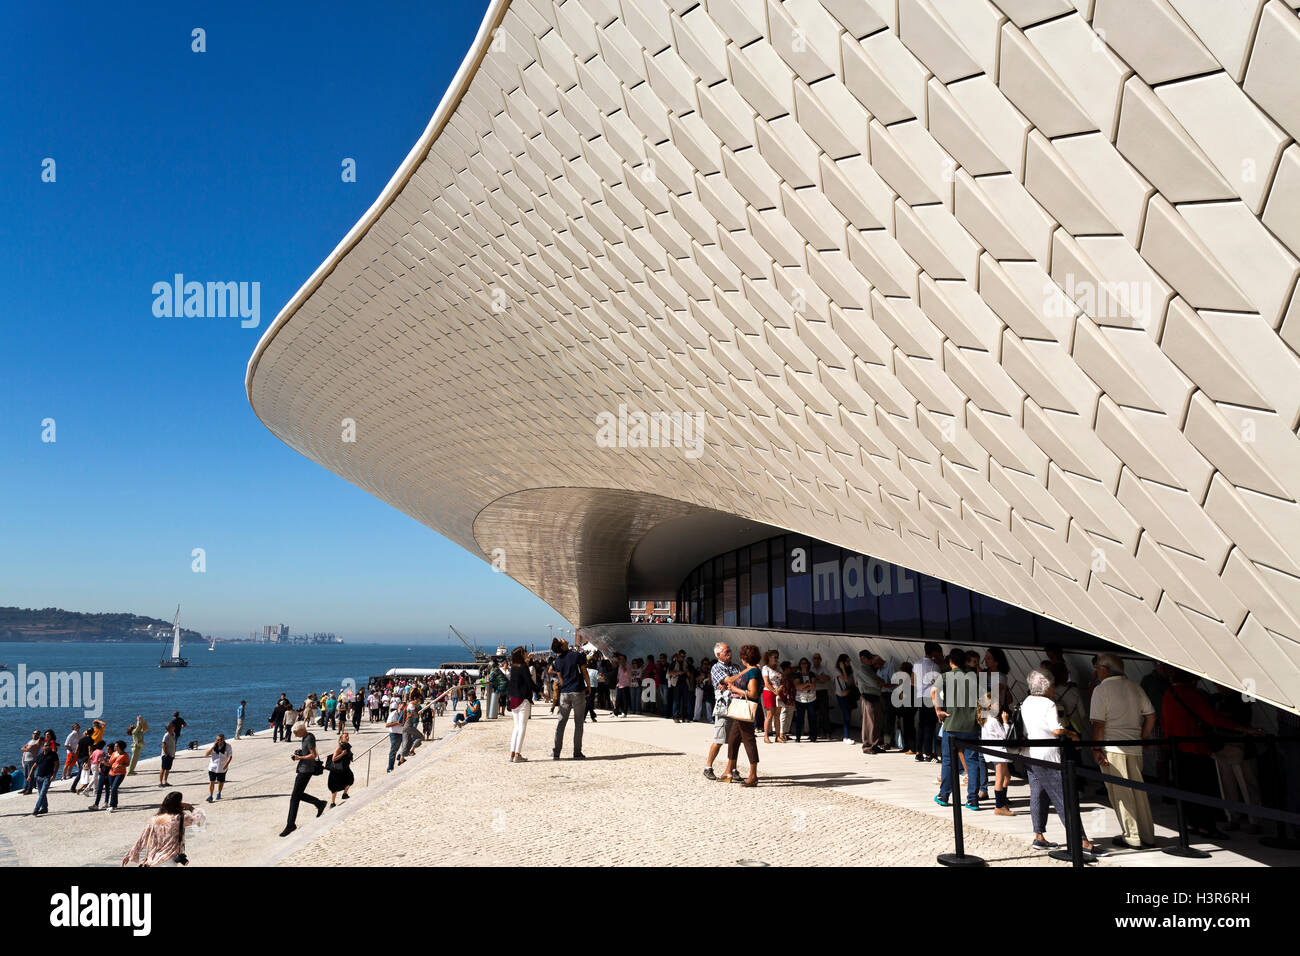 Foule à l'ouverture du monde plus nouveau musée, la MAAT (Musée d'Art, Architecture et Technologie) à Lisbonne, Portugal Banque D'Images